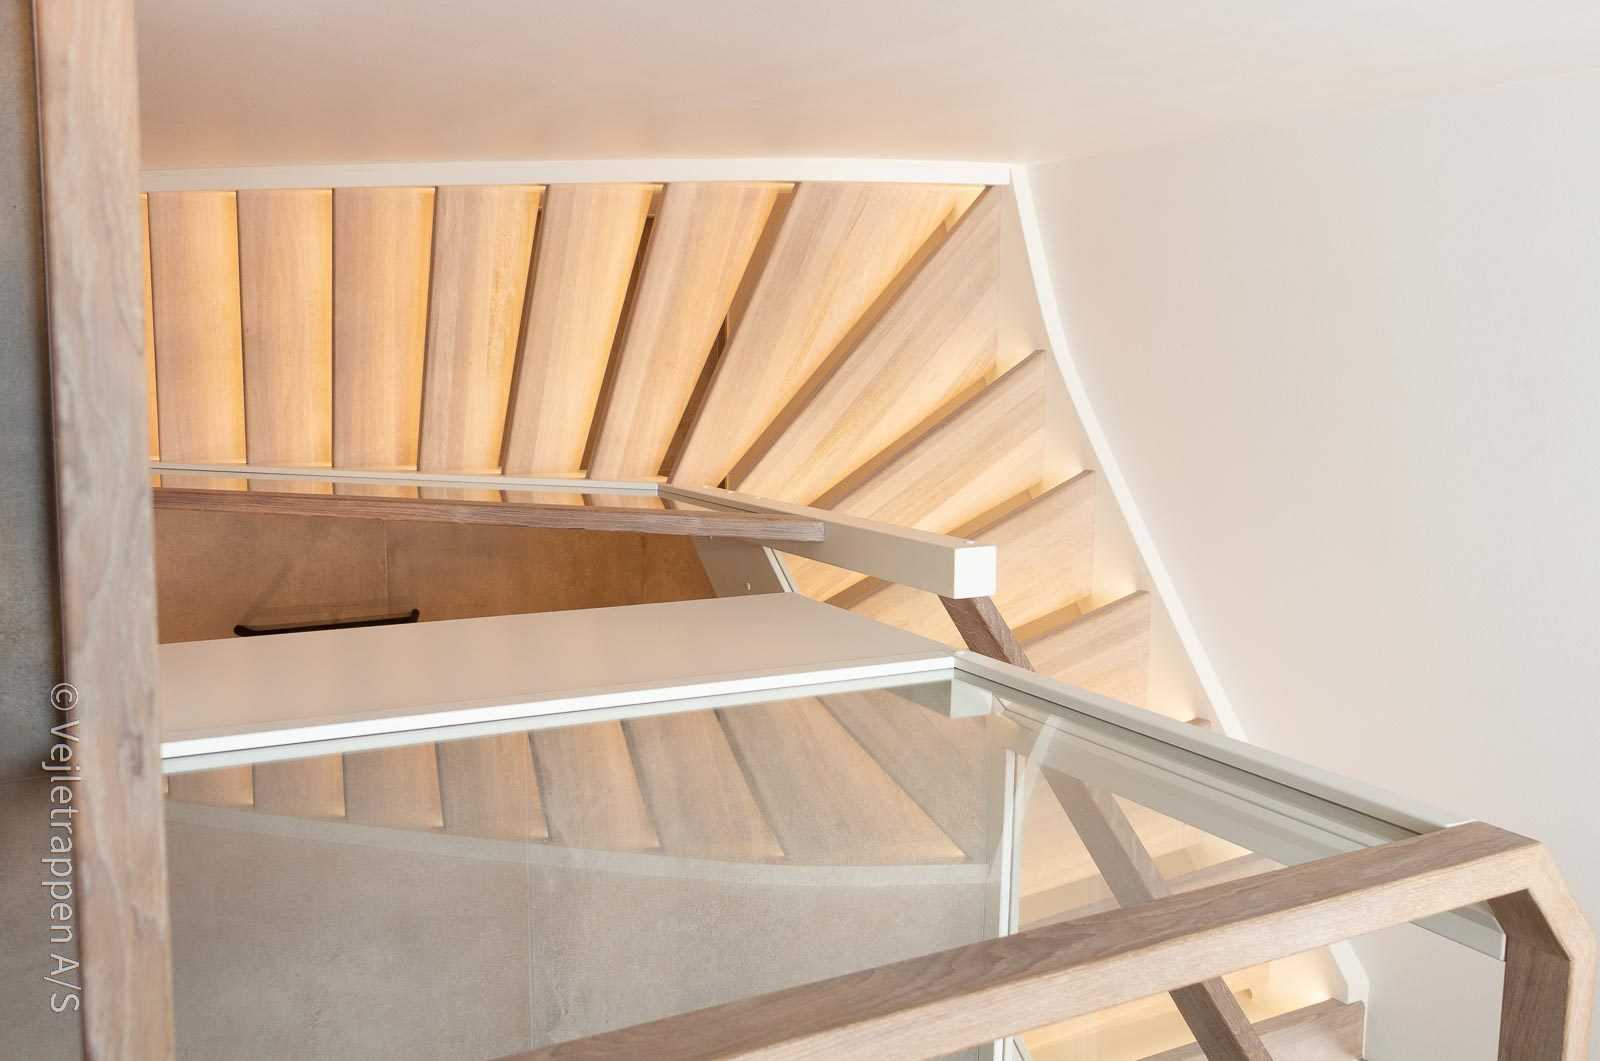 Kvartsvingstrappe med glasværn og trappelys, trætrappe fra Vejletrappen